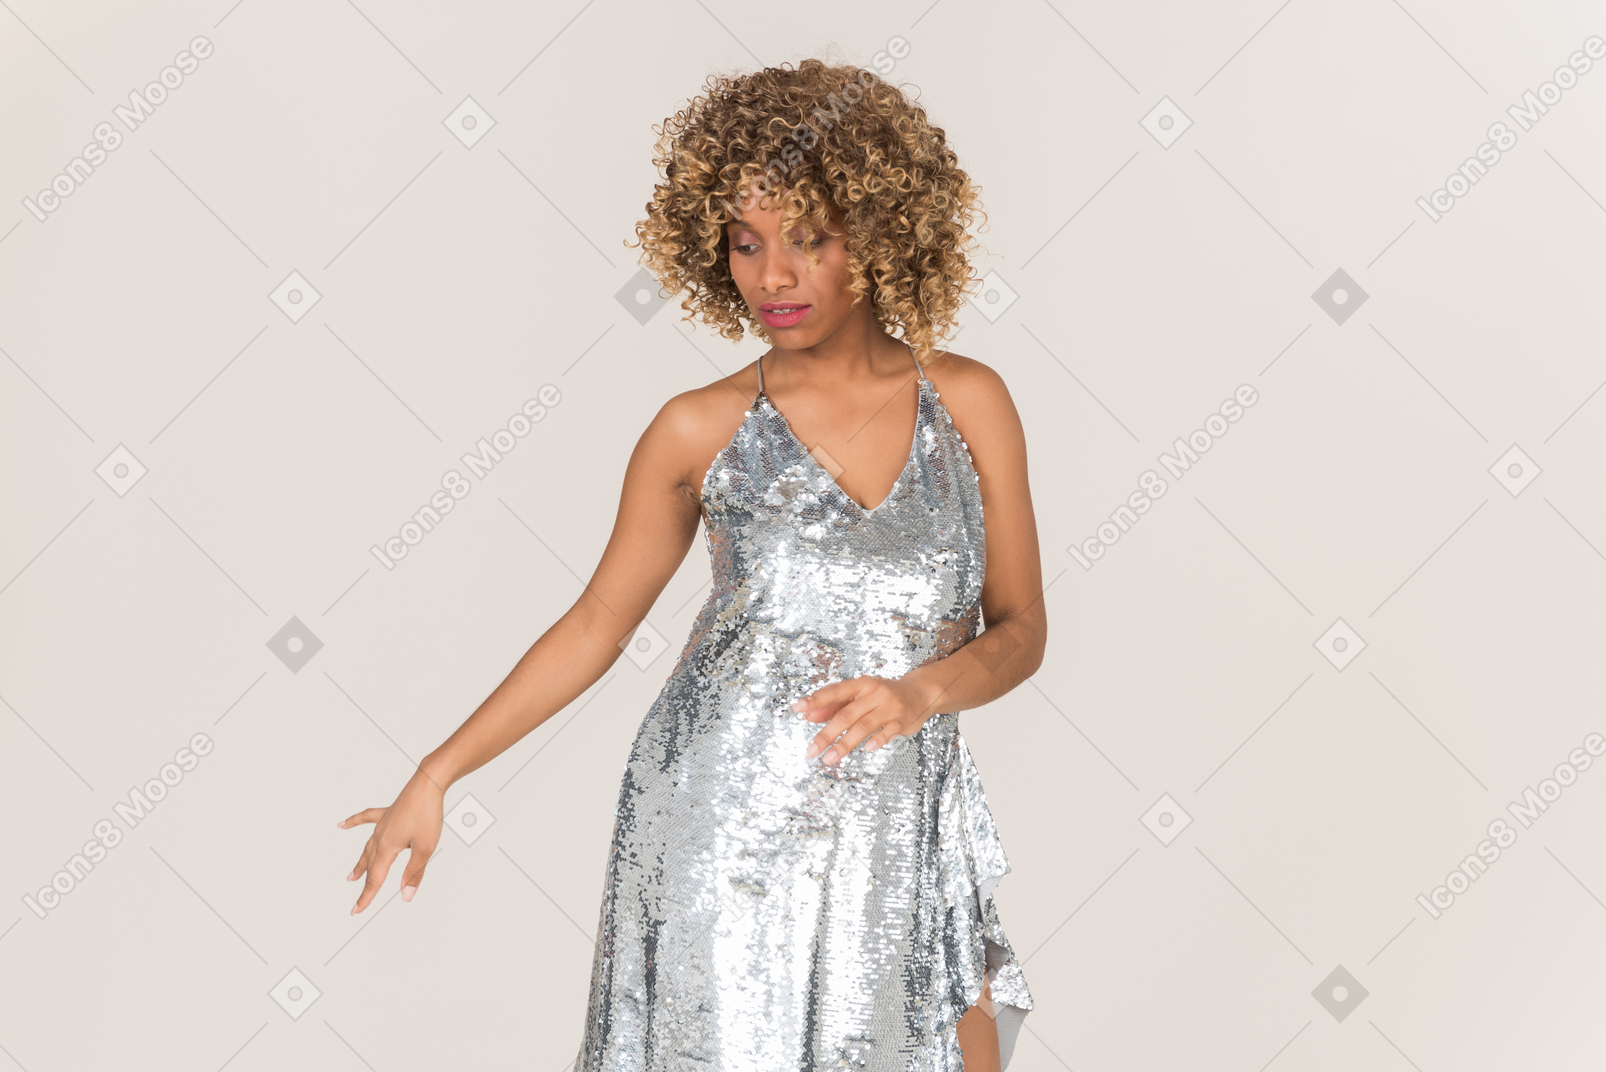 Young woman in shining grey dress dancing